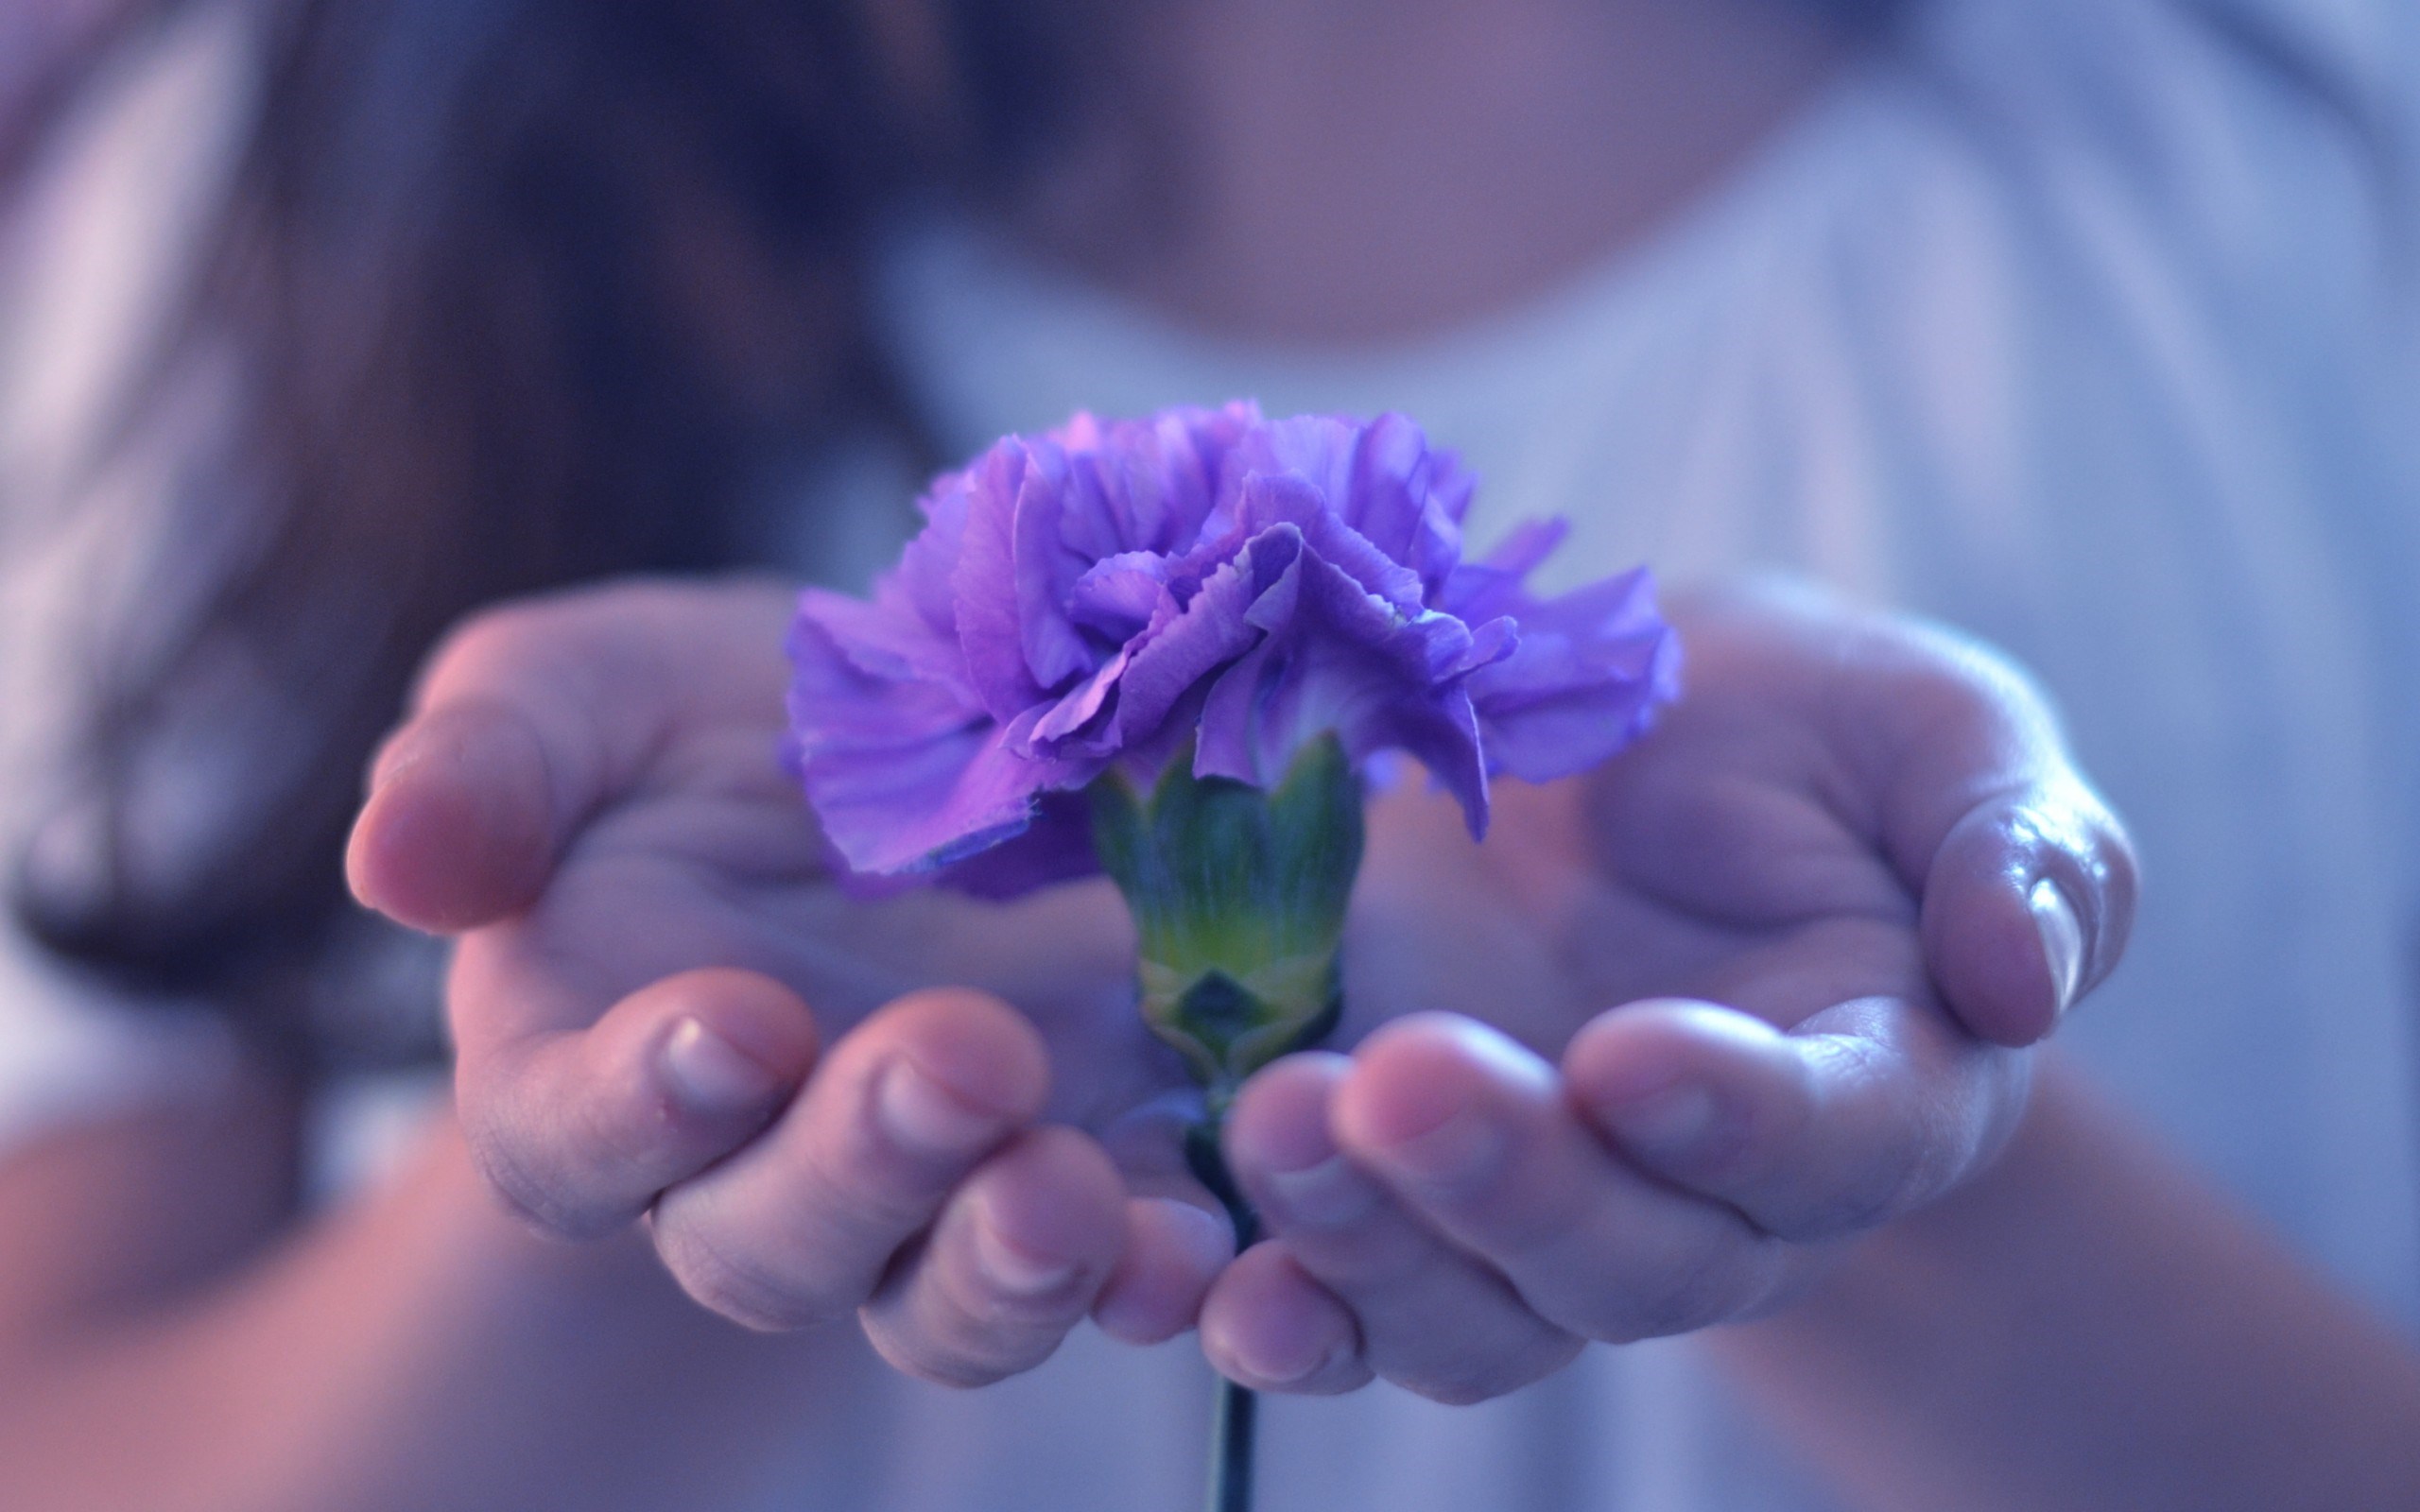 Flower in hand - Instamoz Photo sharing